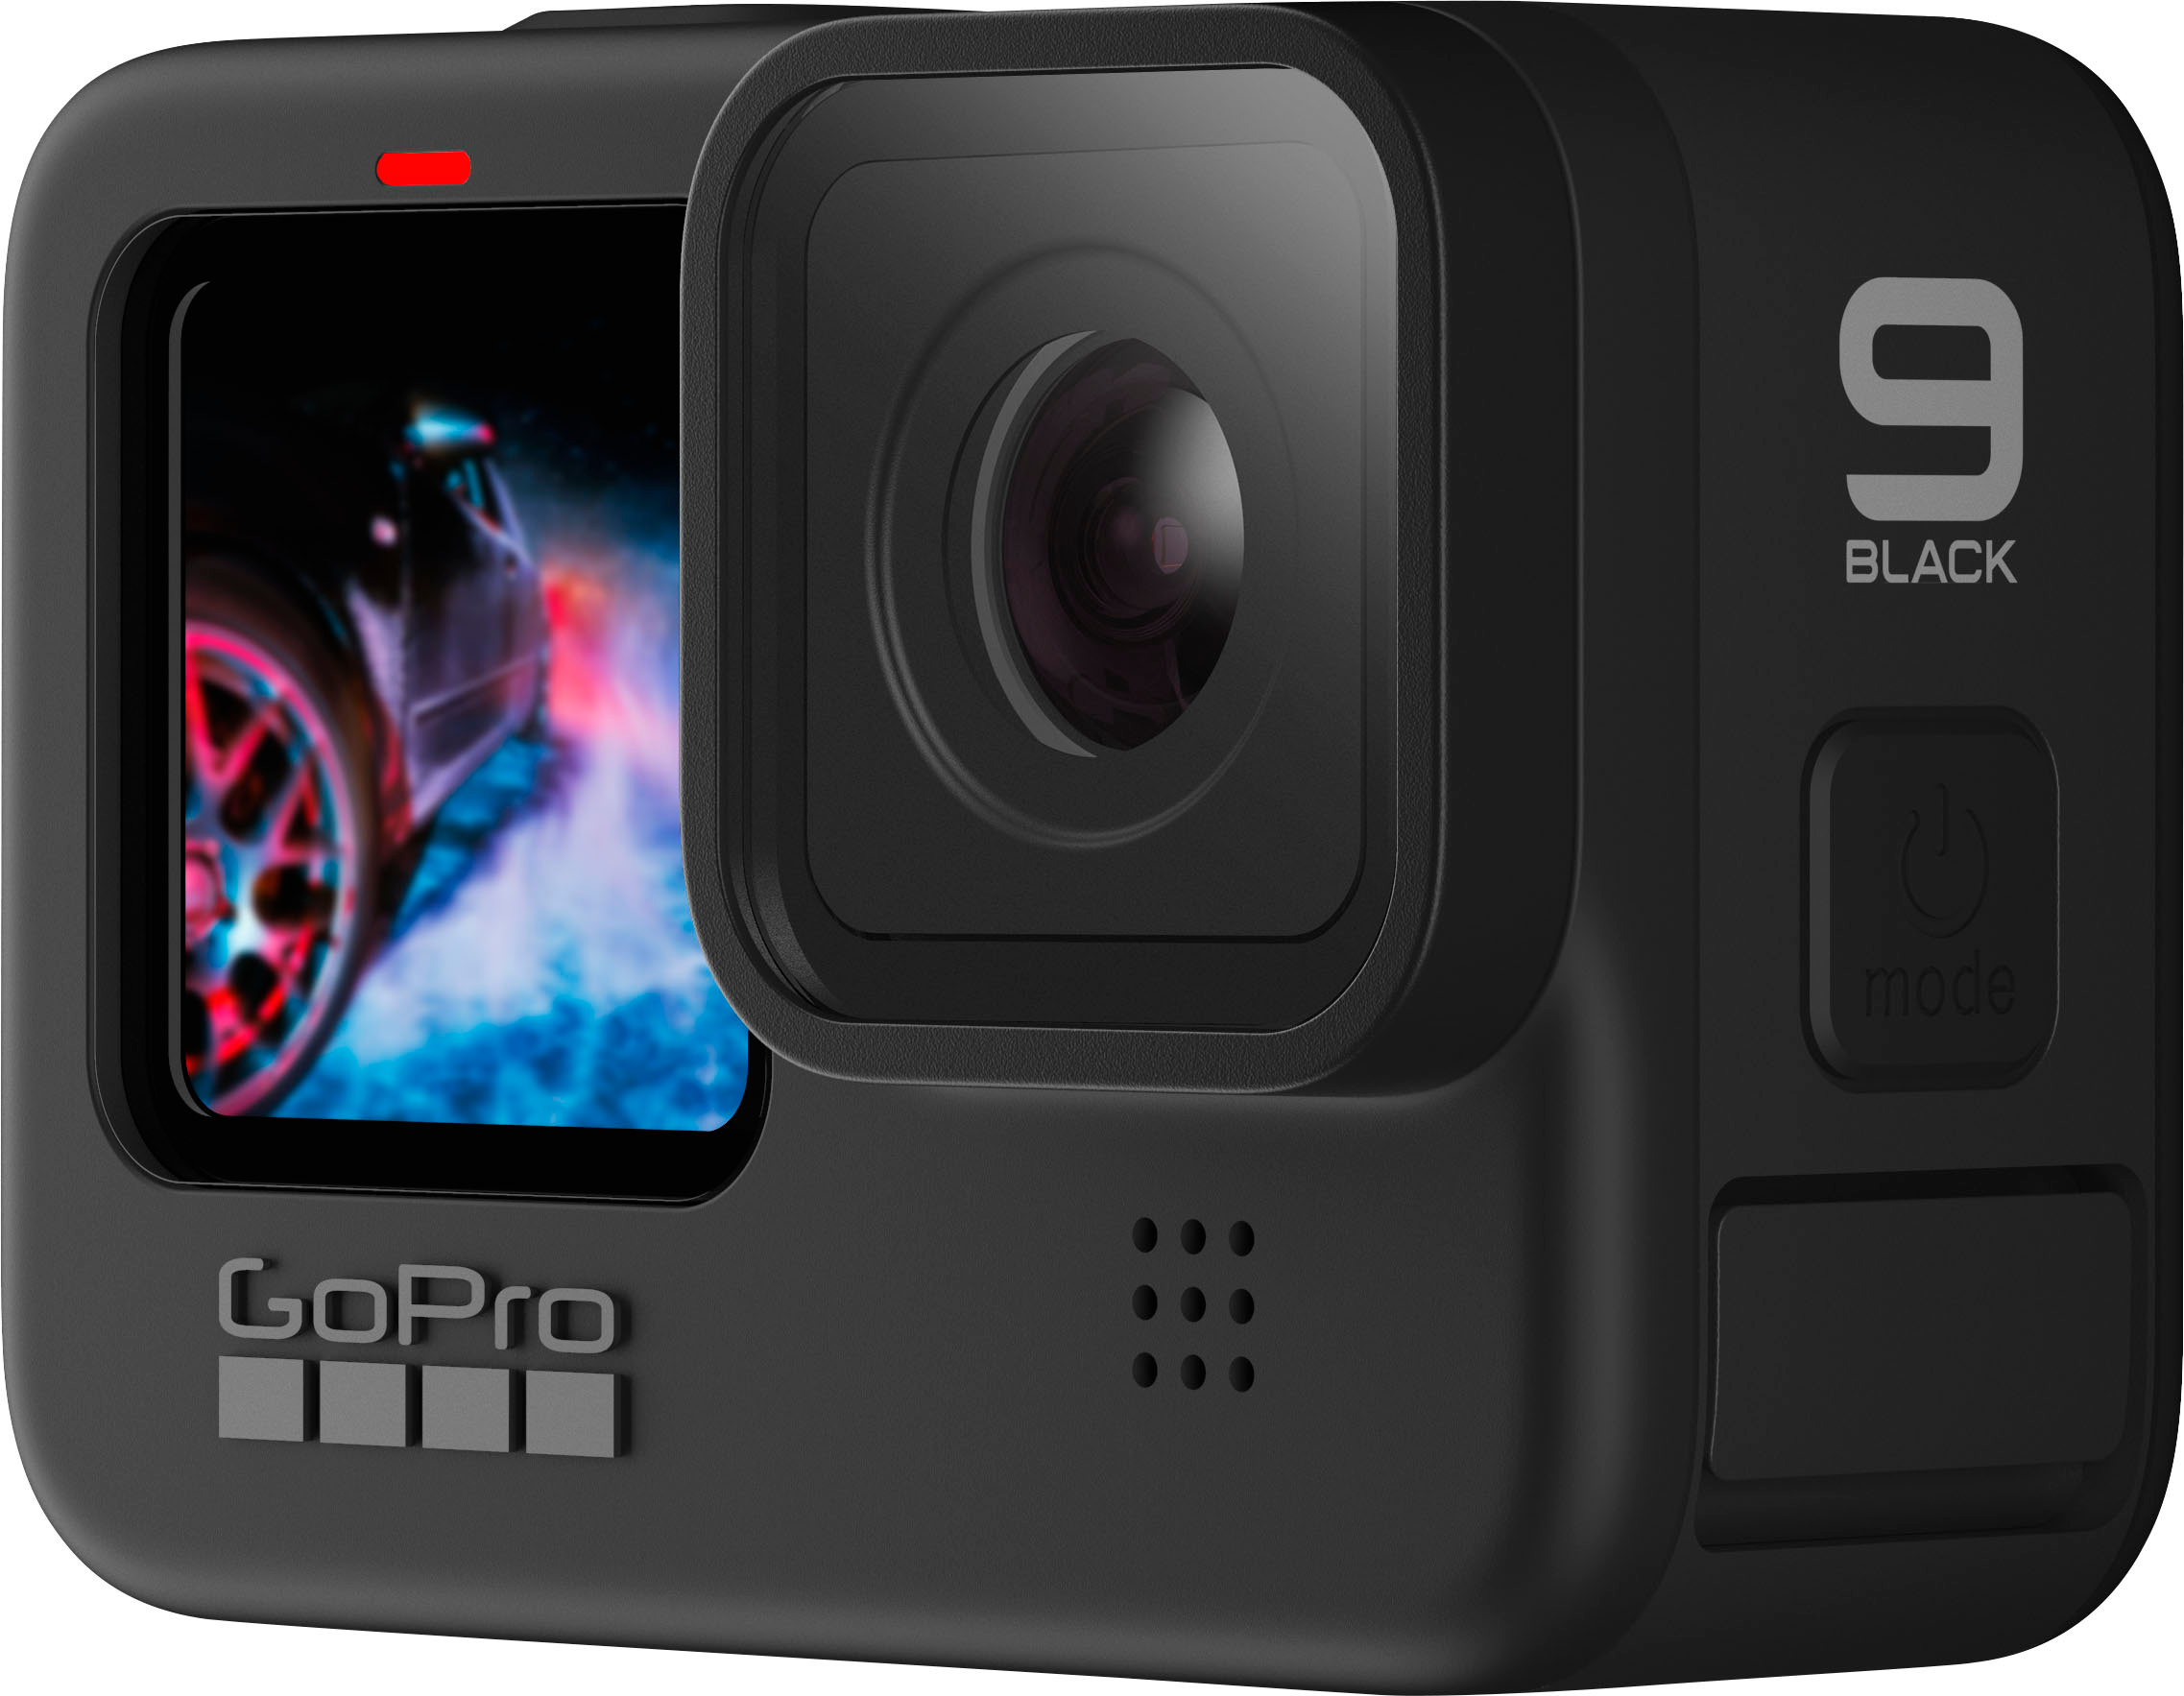 19000円安い買い付け 特典付き gopro hero 9 カメラ Go Pro HERO 9 